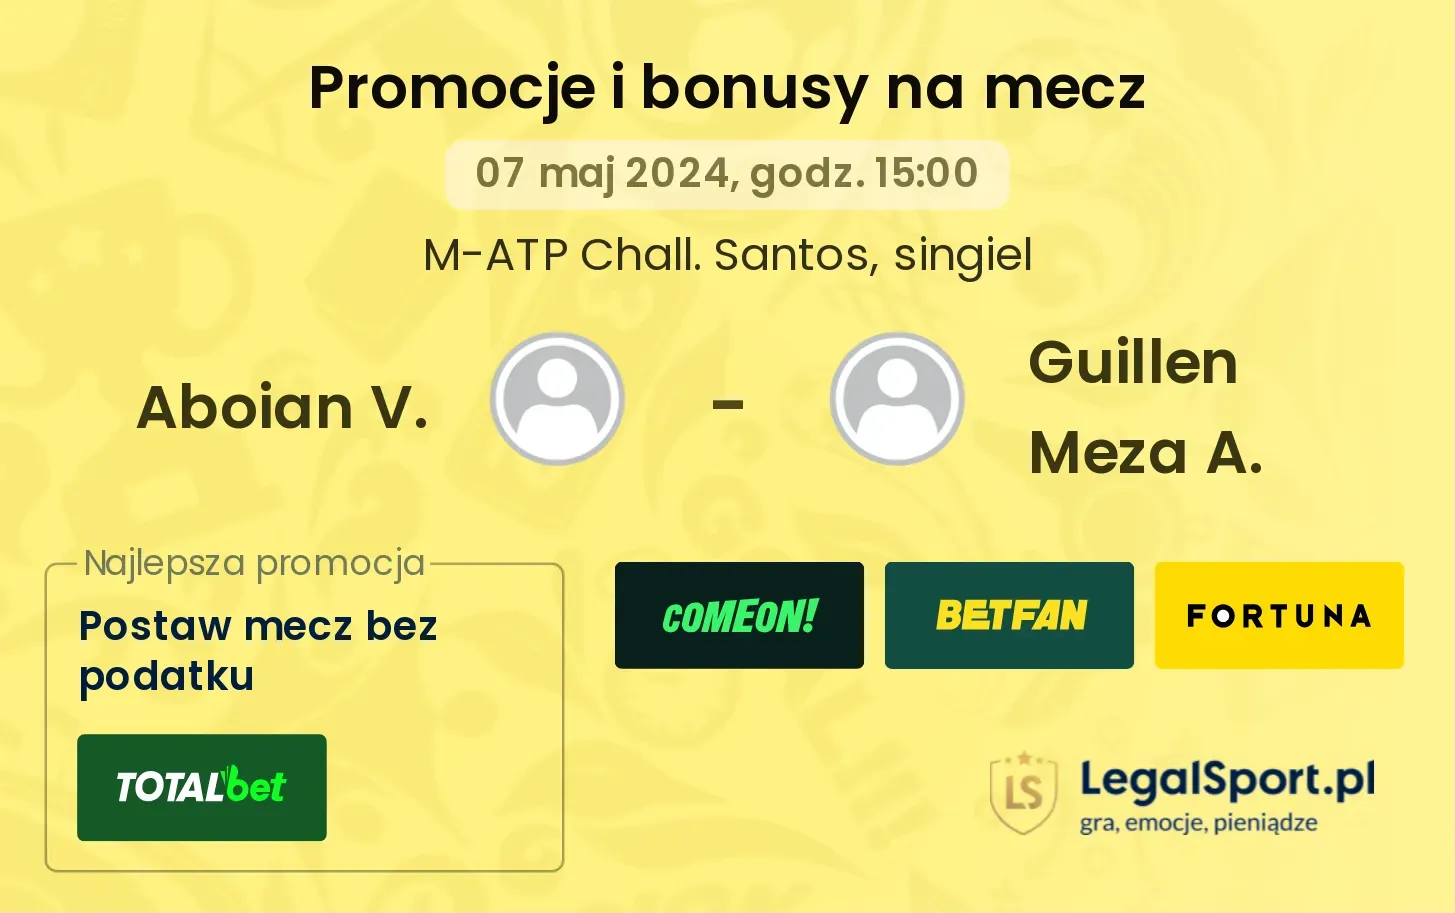 Aboian V. - Guillen Meza A. promocje bonusy na mecz